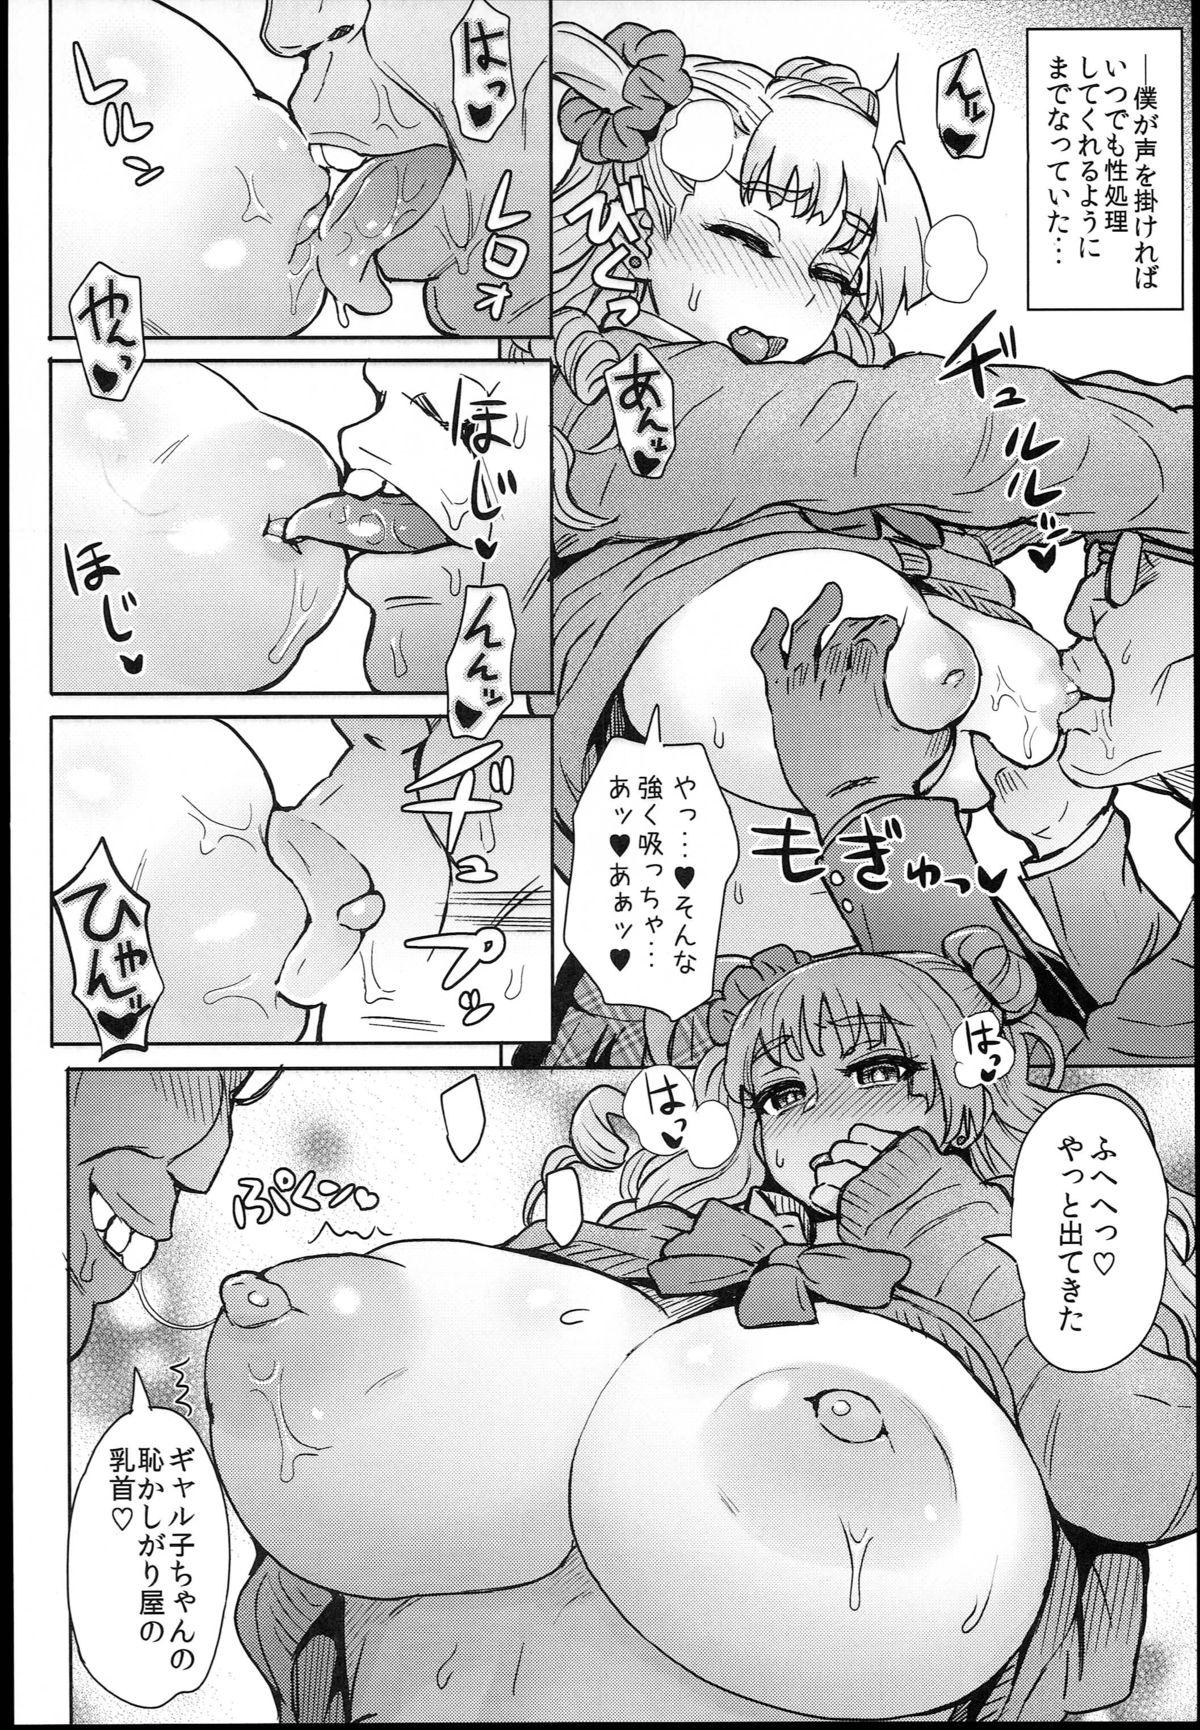 Hoe Oshierarenai!? Galko-chan - Oshiete galko-chan Anale - Page 6